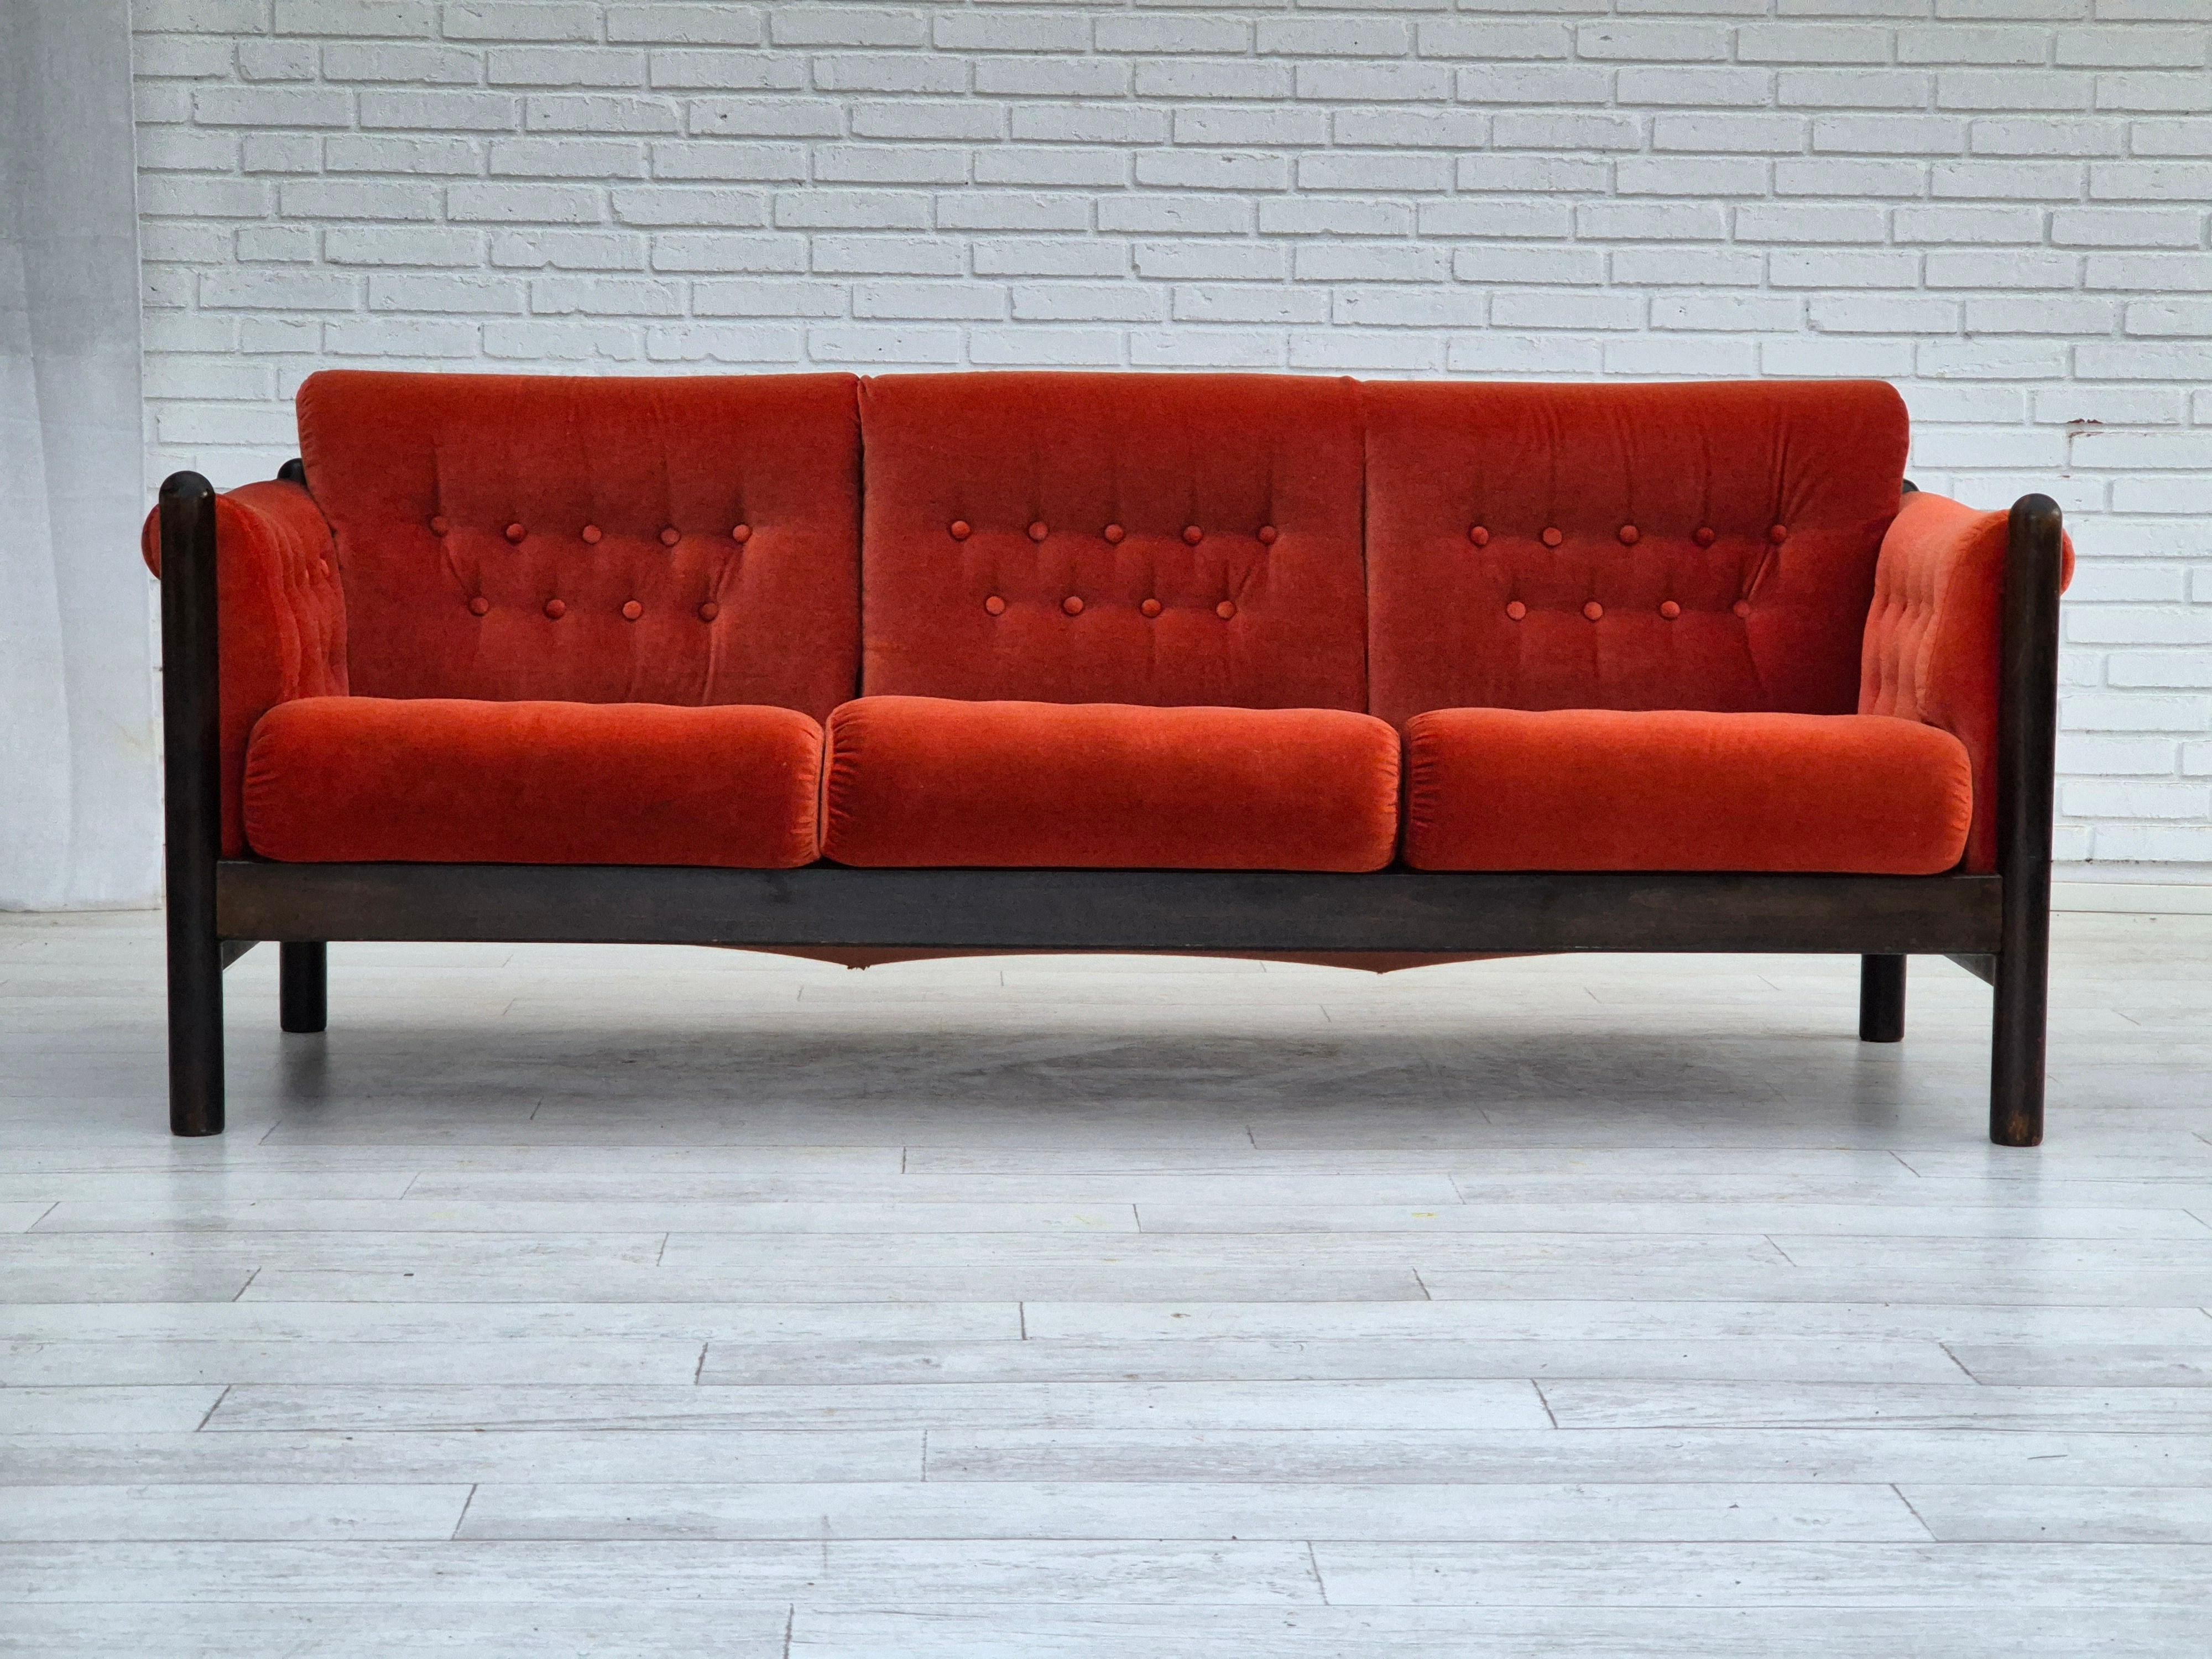 Canapé scandinave 3 places des années 1980 en très bon état d'origine : pas d'odeurs ni de taches. Velours rouge clair, bois de chêne foncé. Fabriqué par un fabricant de meubles norvégien ou danois dans les années 1980-85.